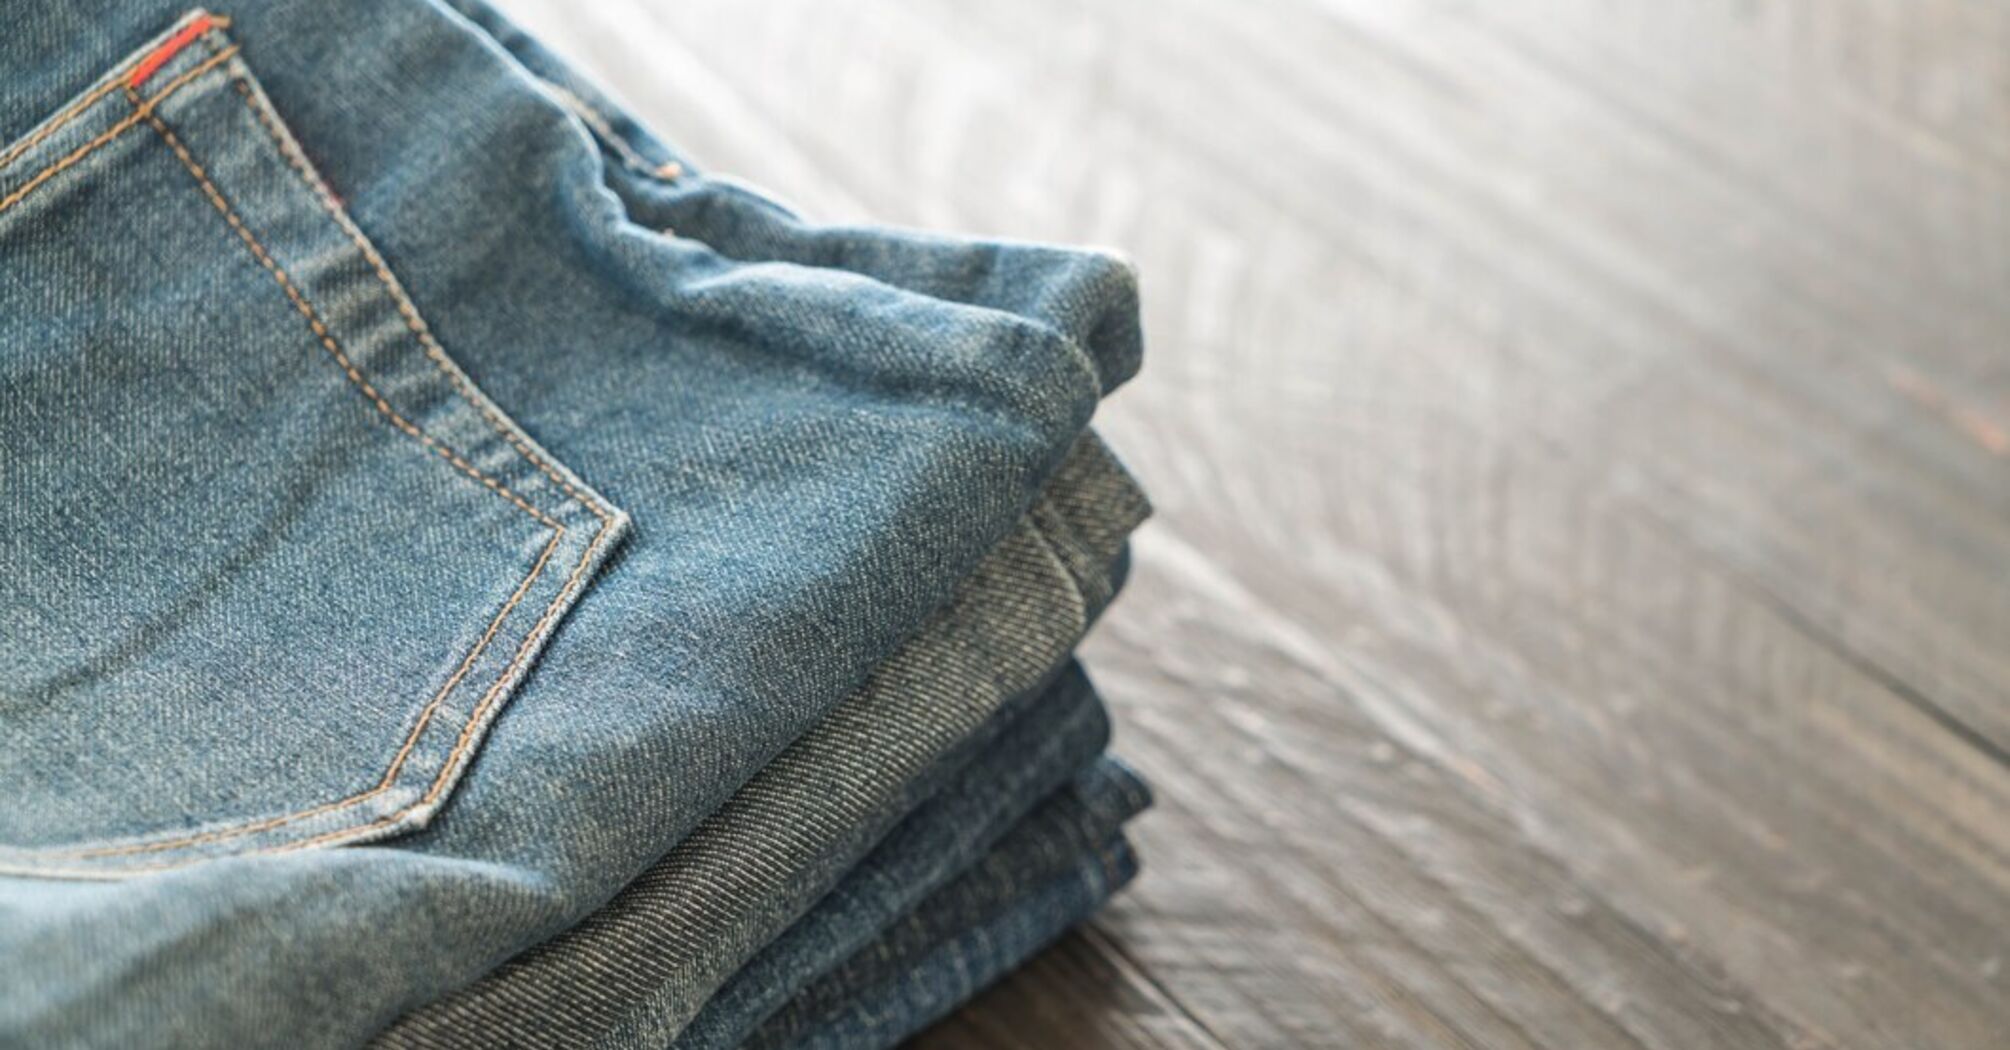 Як правильно прати джинси, щоб вони не втратили колір: корисні поради